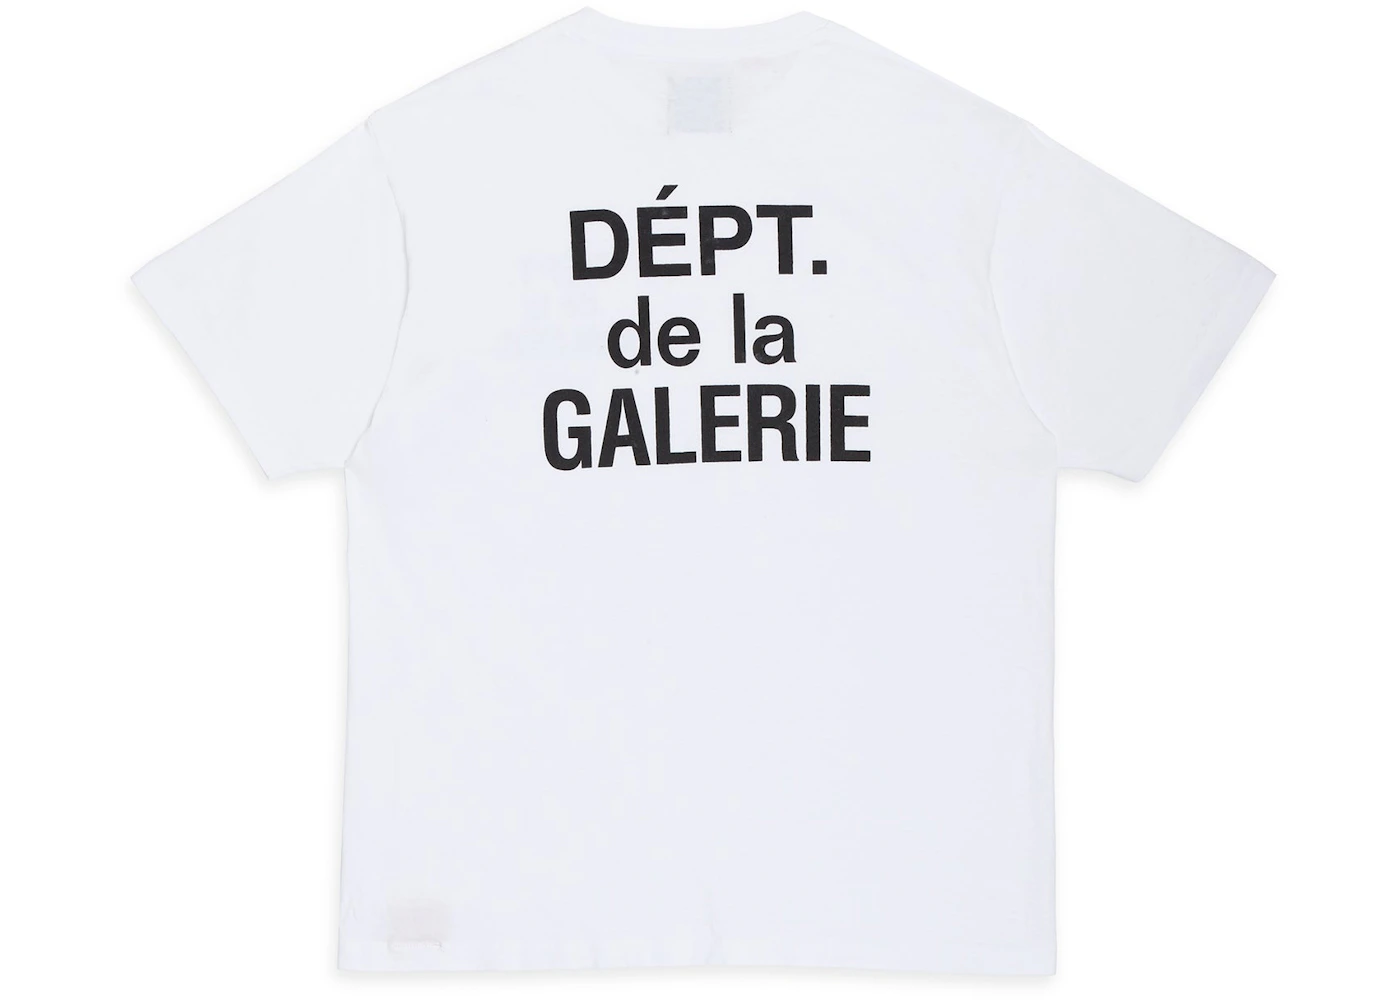 Gallery Dept. French T-shirt White/Black Men's - US